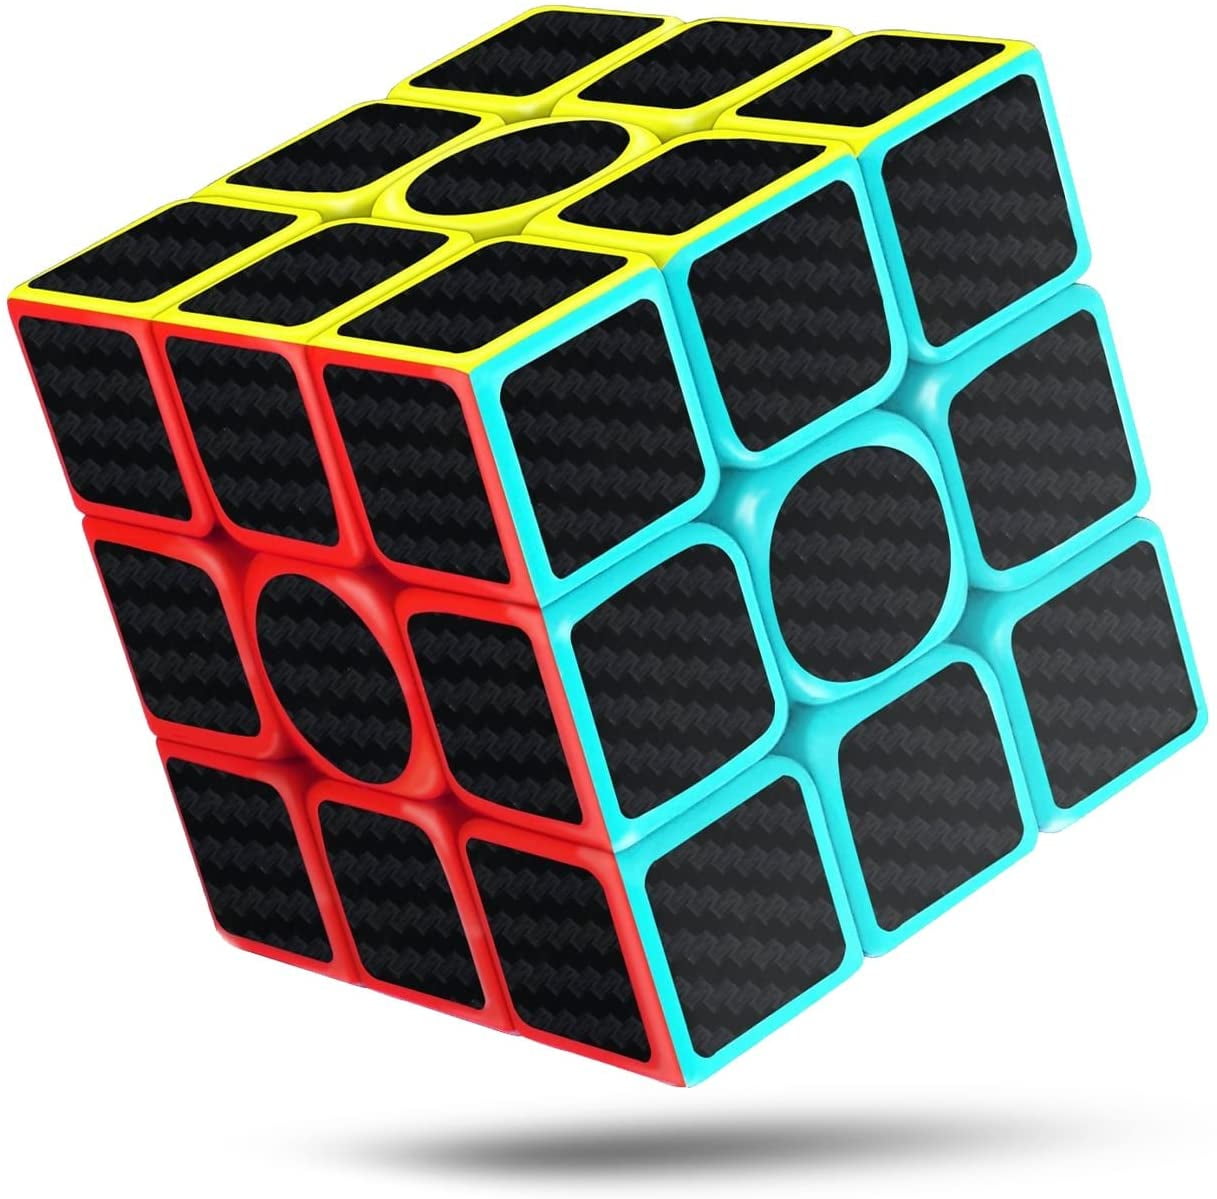 2x2 QiYi QiDi Ultra Fast Speed Cube Magic Twist Puzzle Brain Teaser USA SELLER 